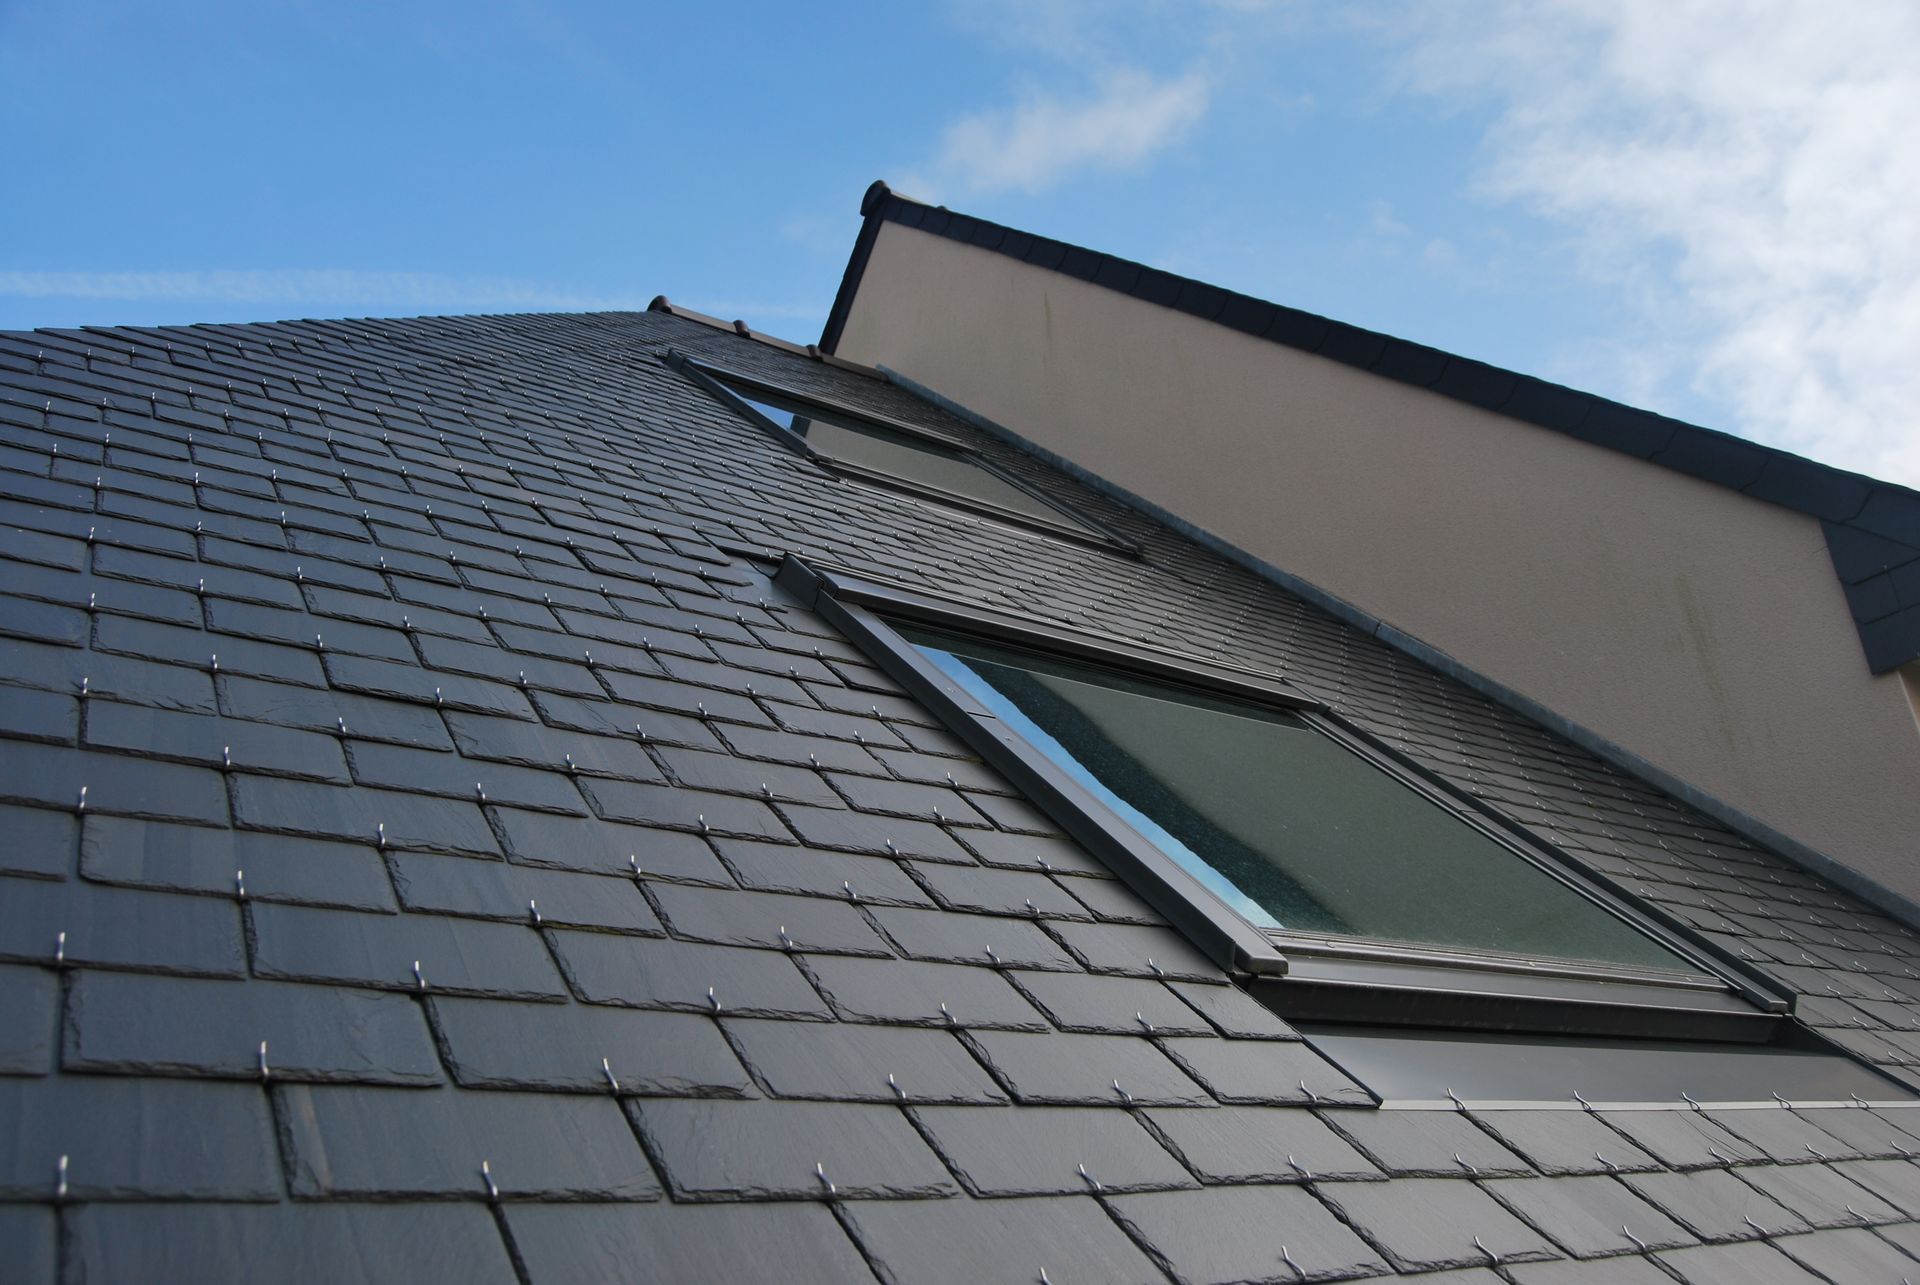 Toiture en ardoises avec fenêtre de toit intégrée de couleur noire